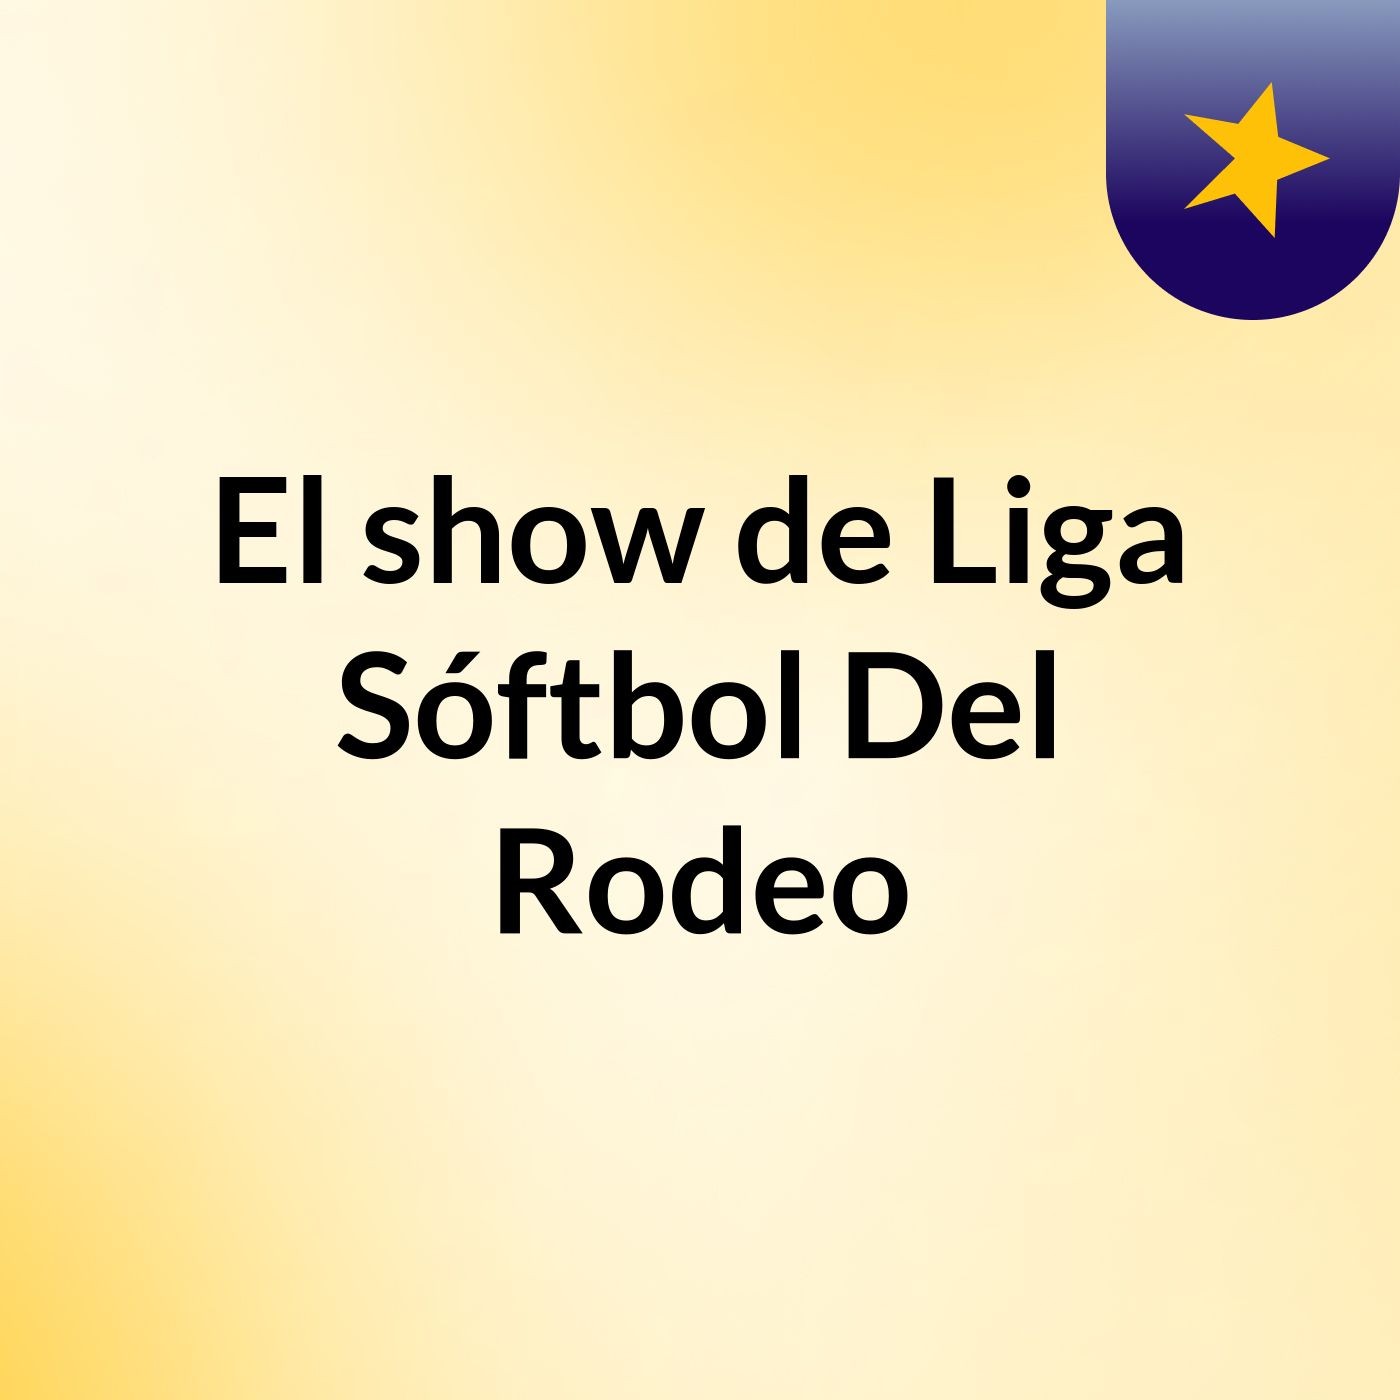 Episodio 4 - El show de Liga Sóftbol Del Rodeo